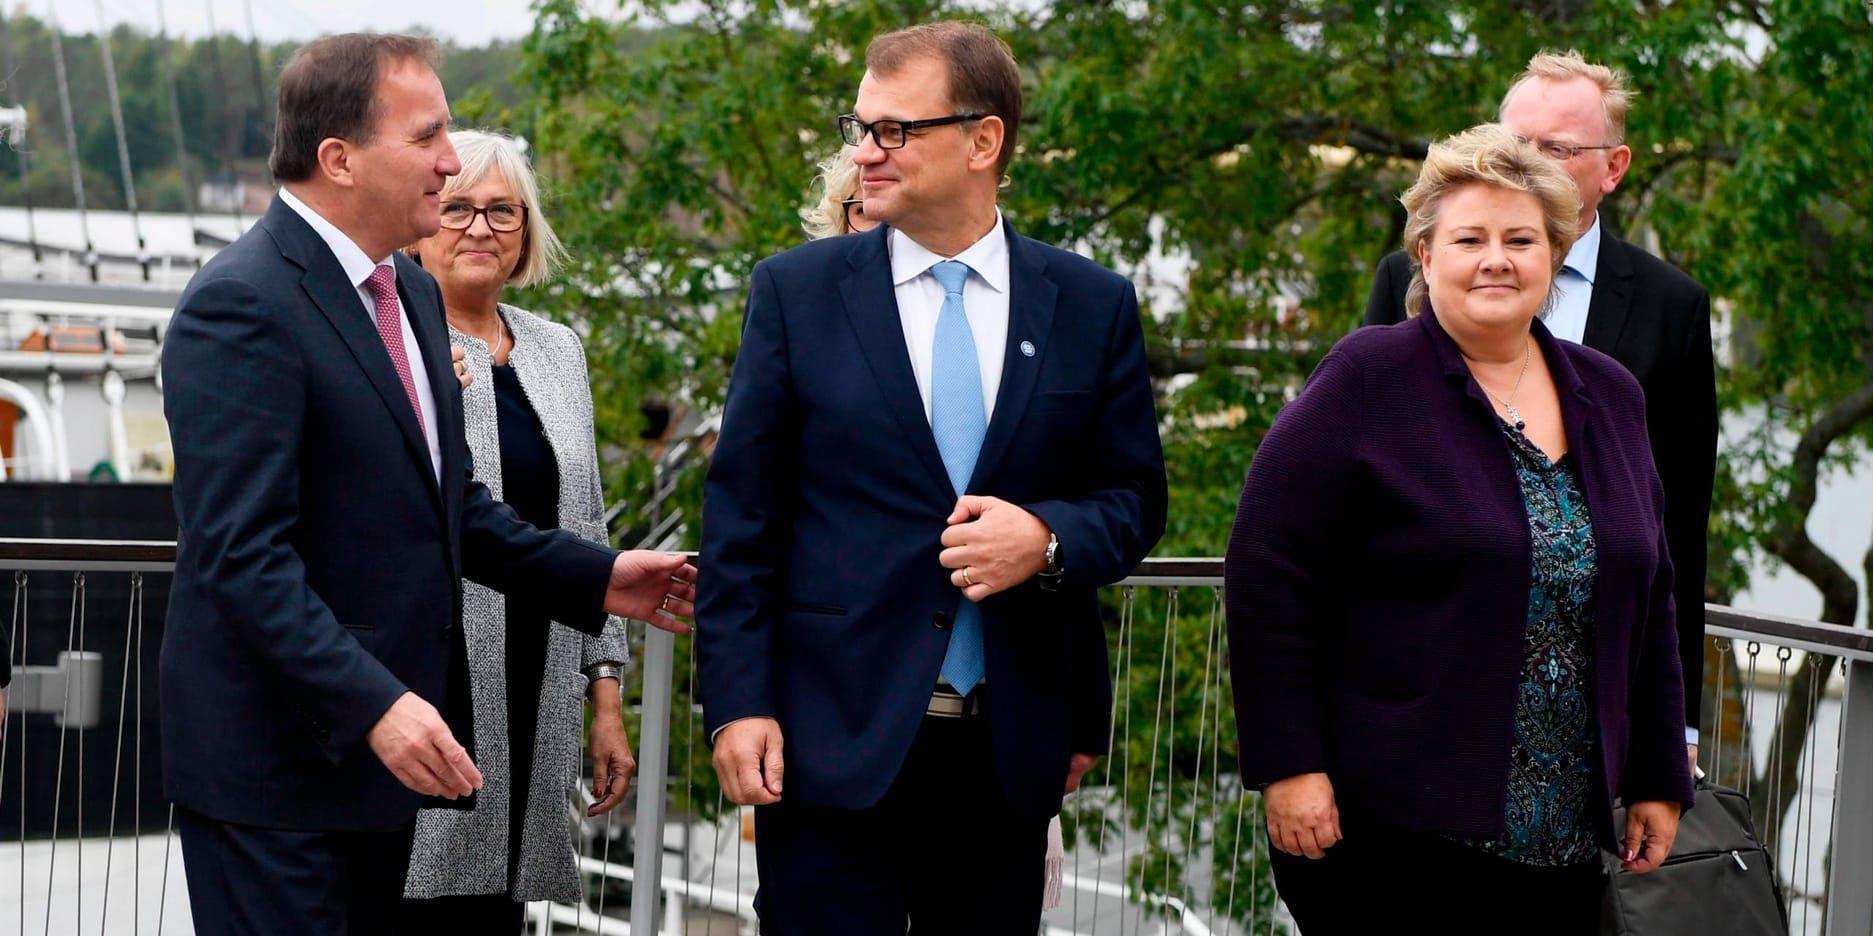 Statsminister Stefan Löfven med hustrun Ulla Löfven och Finlands statsminister Juha Sipilä med hustrun Minna-Maaria Sipila vid nordiska ministermötet på Åland.